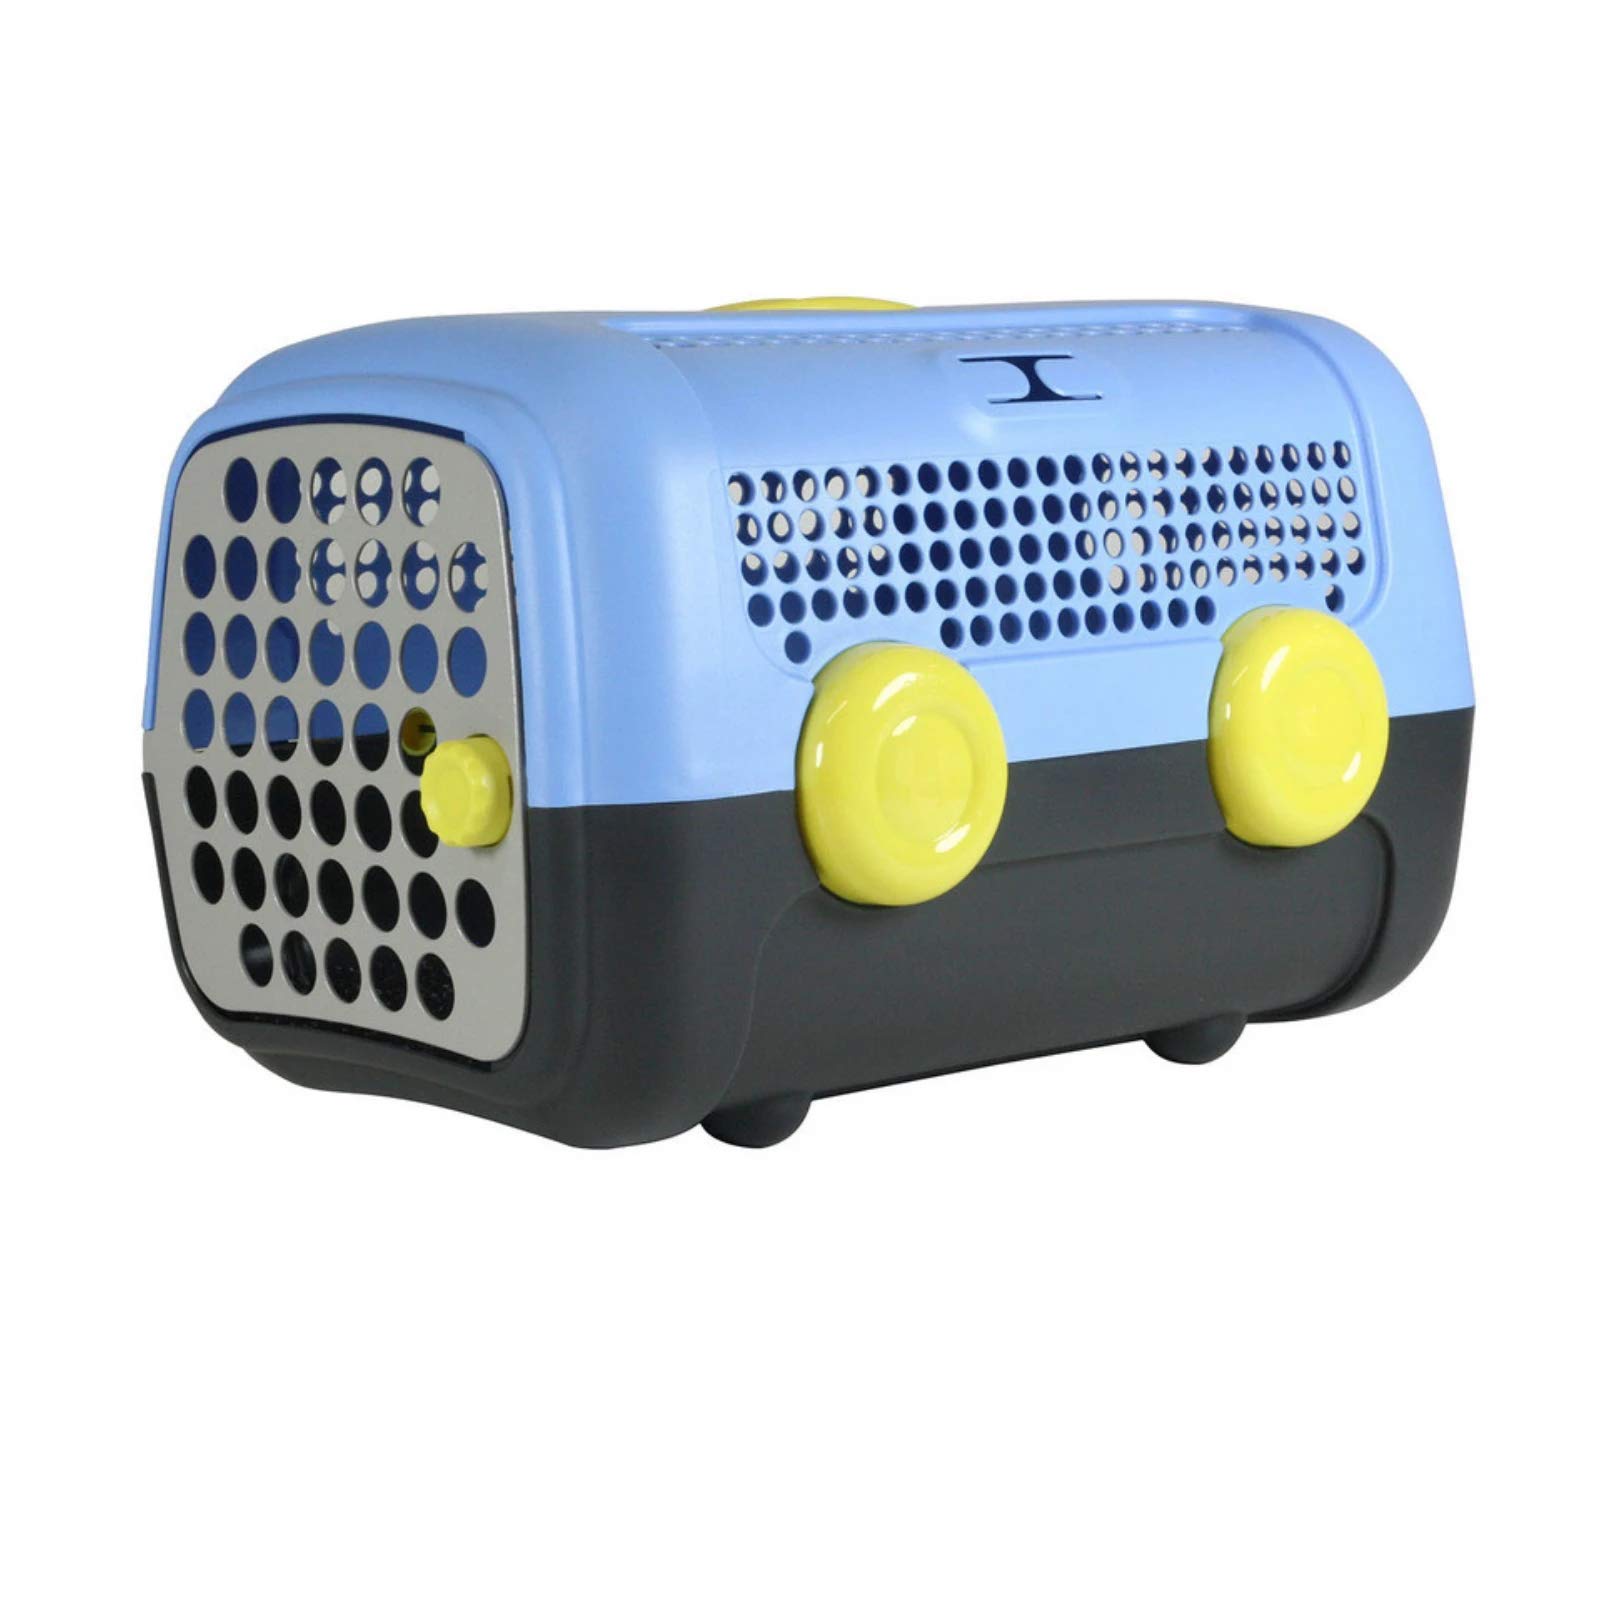 United Pets A.U.T.O. Design Transportbox für kleine Hunde und Katzen, Made in Italy, Hellblau/Grau, inklusive Hygieneteppich 51x37x33cm, Reisetransportbox